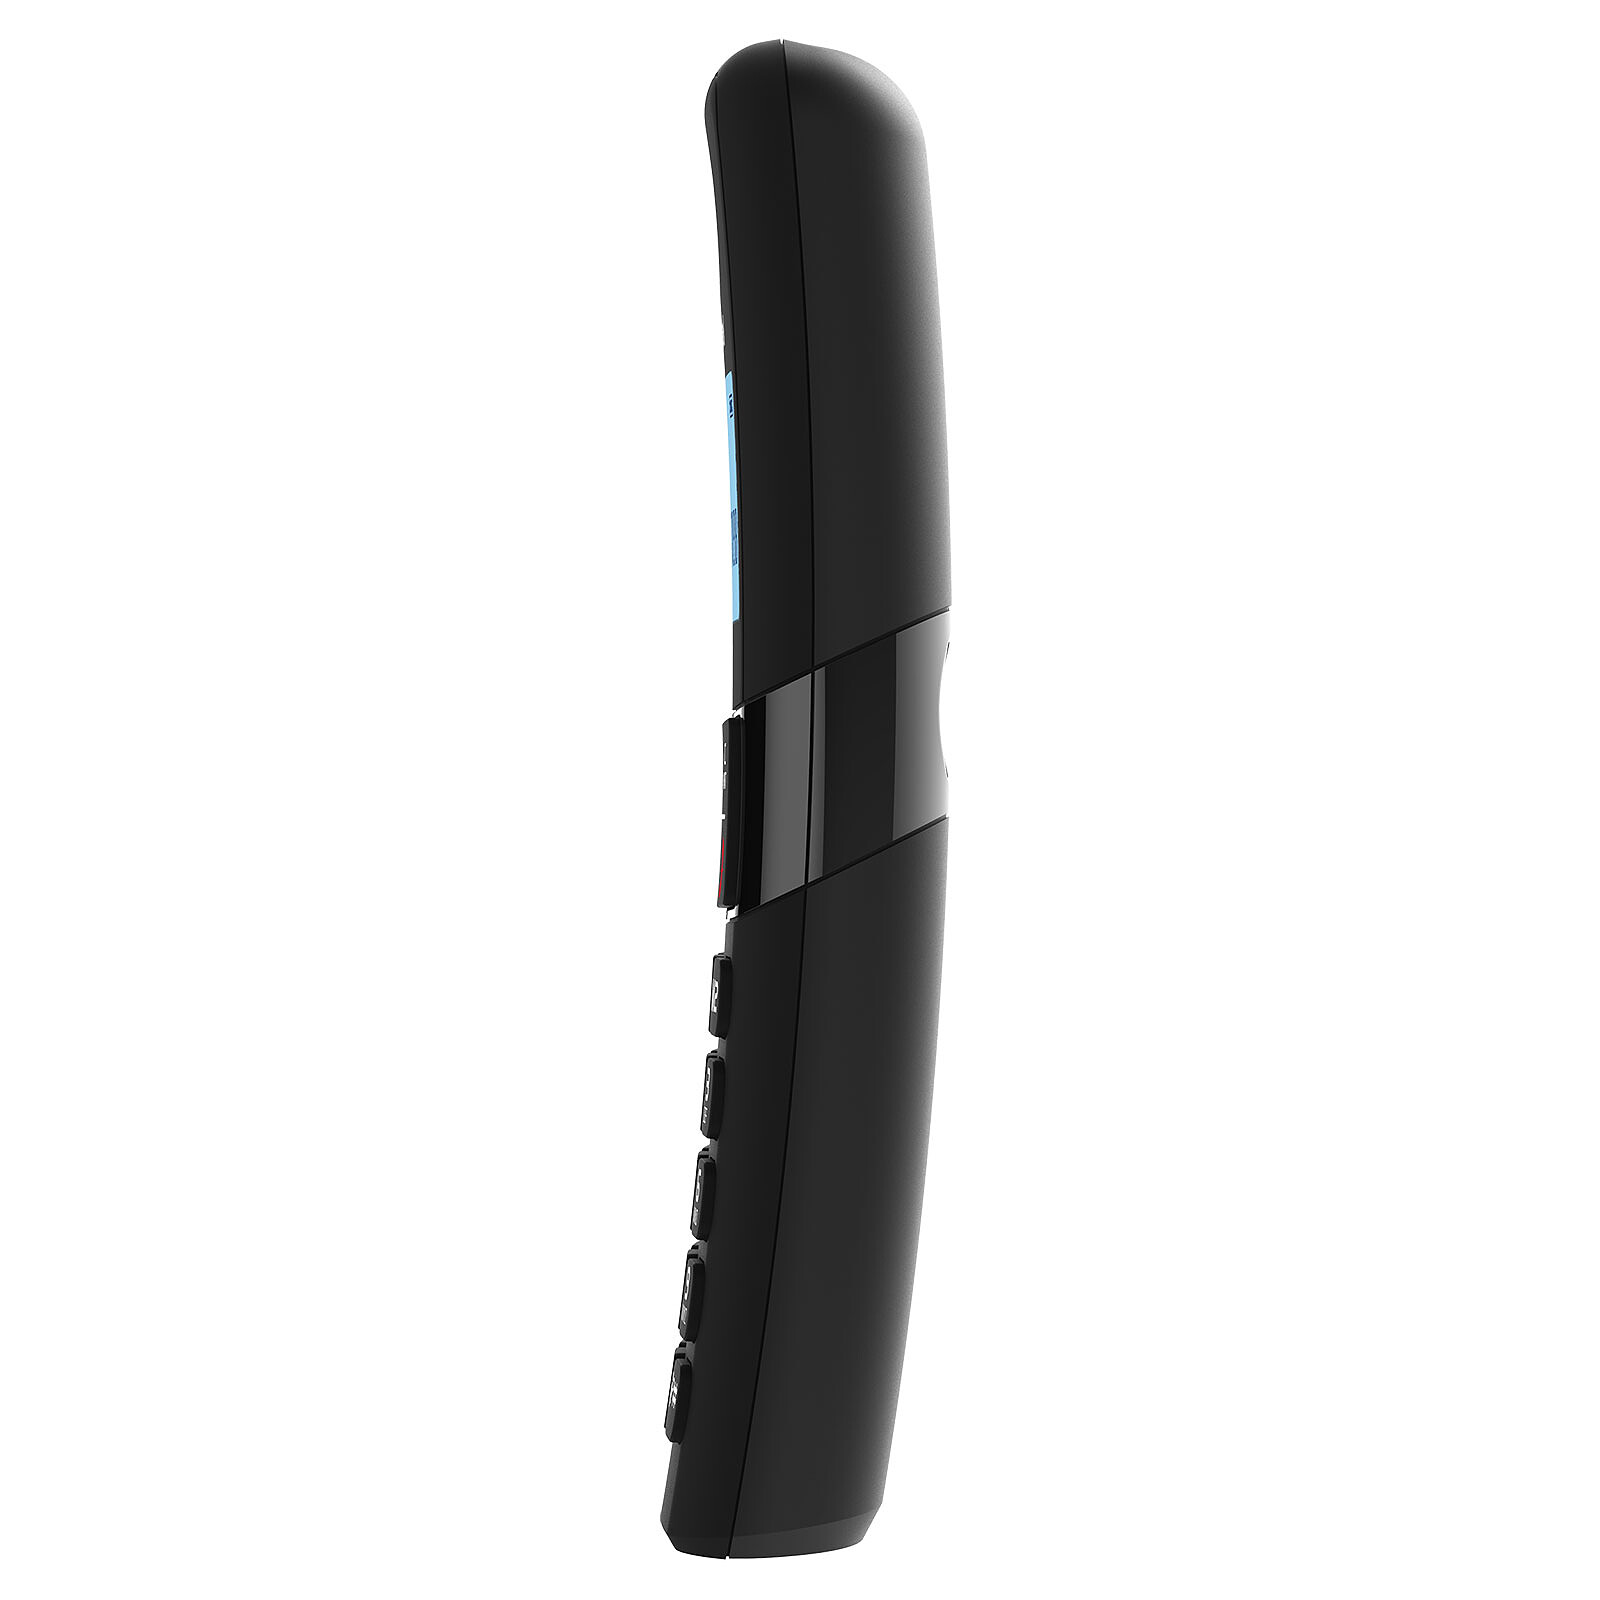 Alcatel F890 Trío de Voz Negro - Teléfono inalámbrico - LDLC